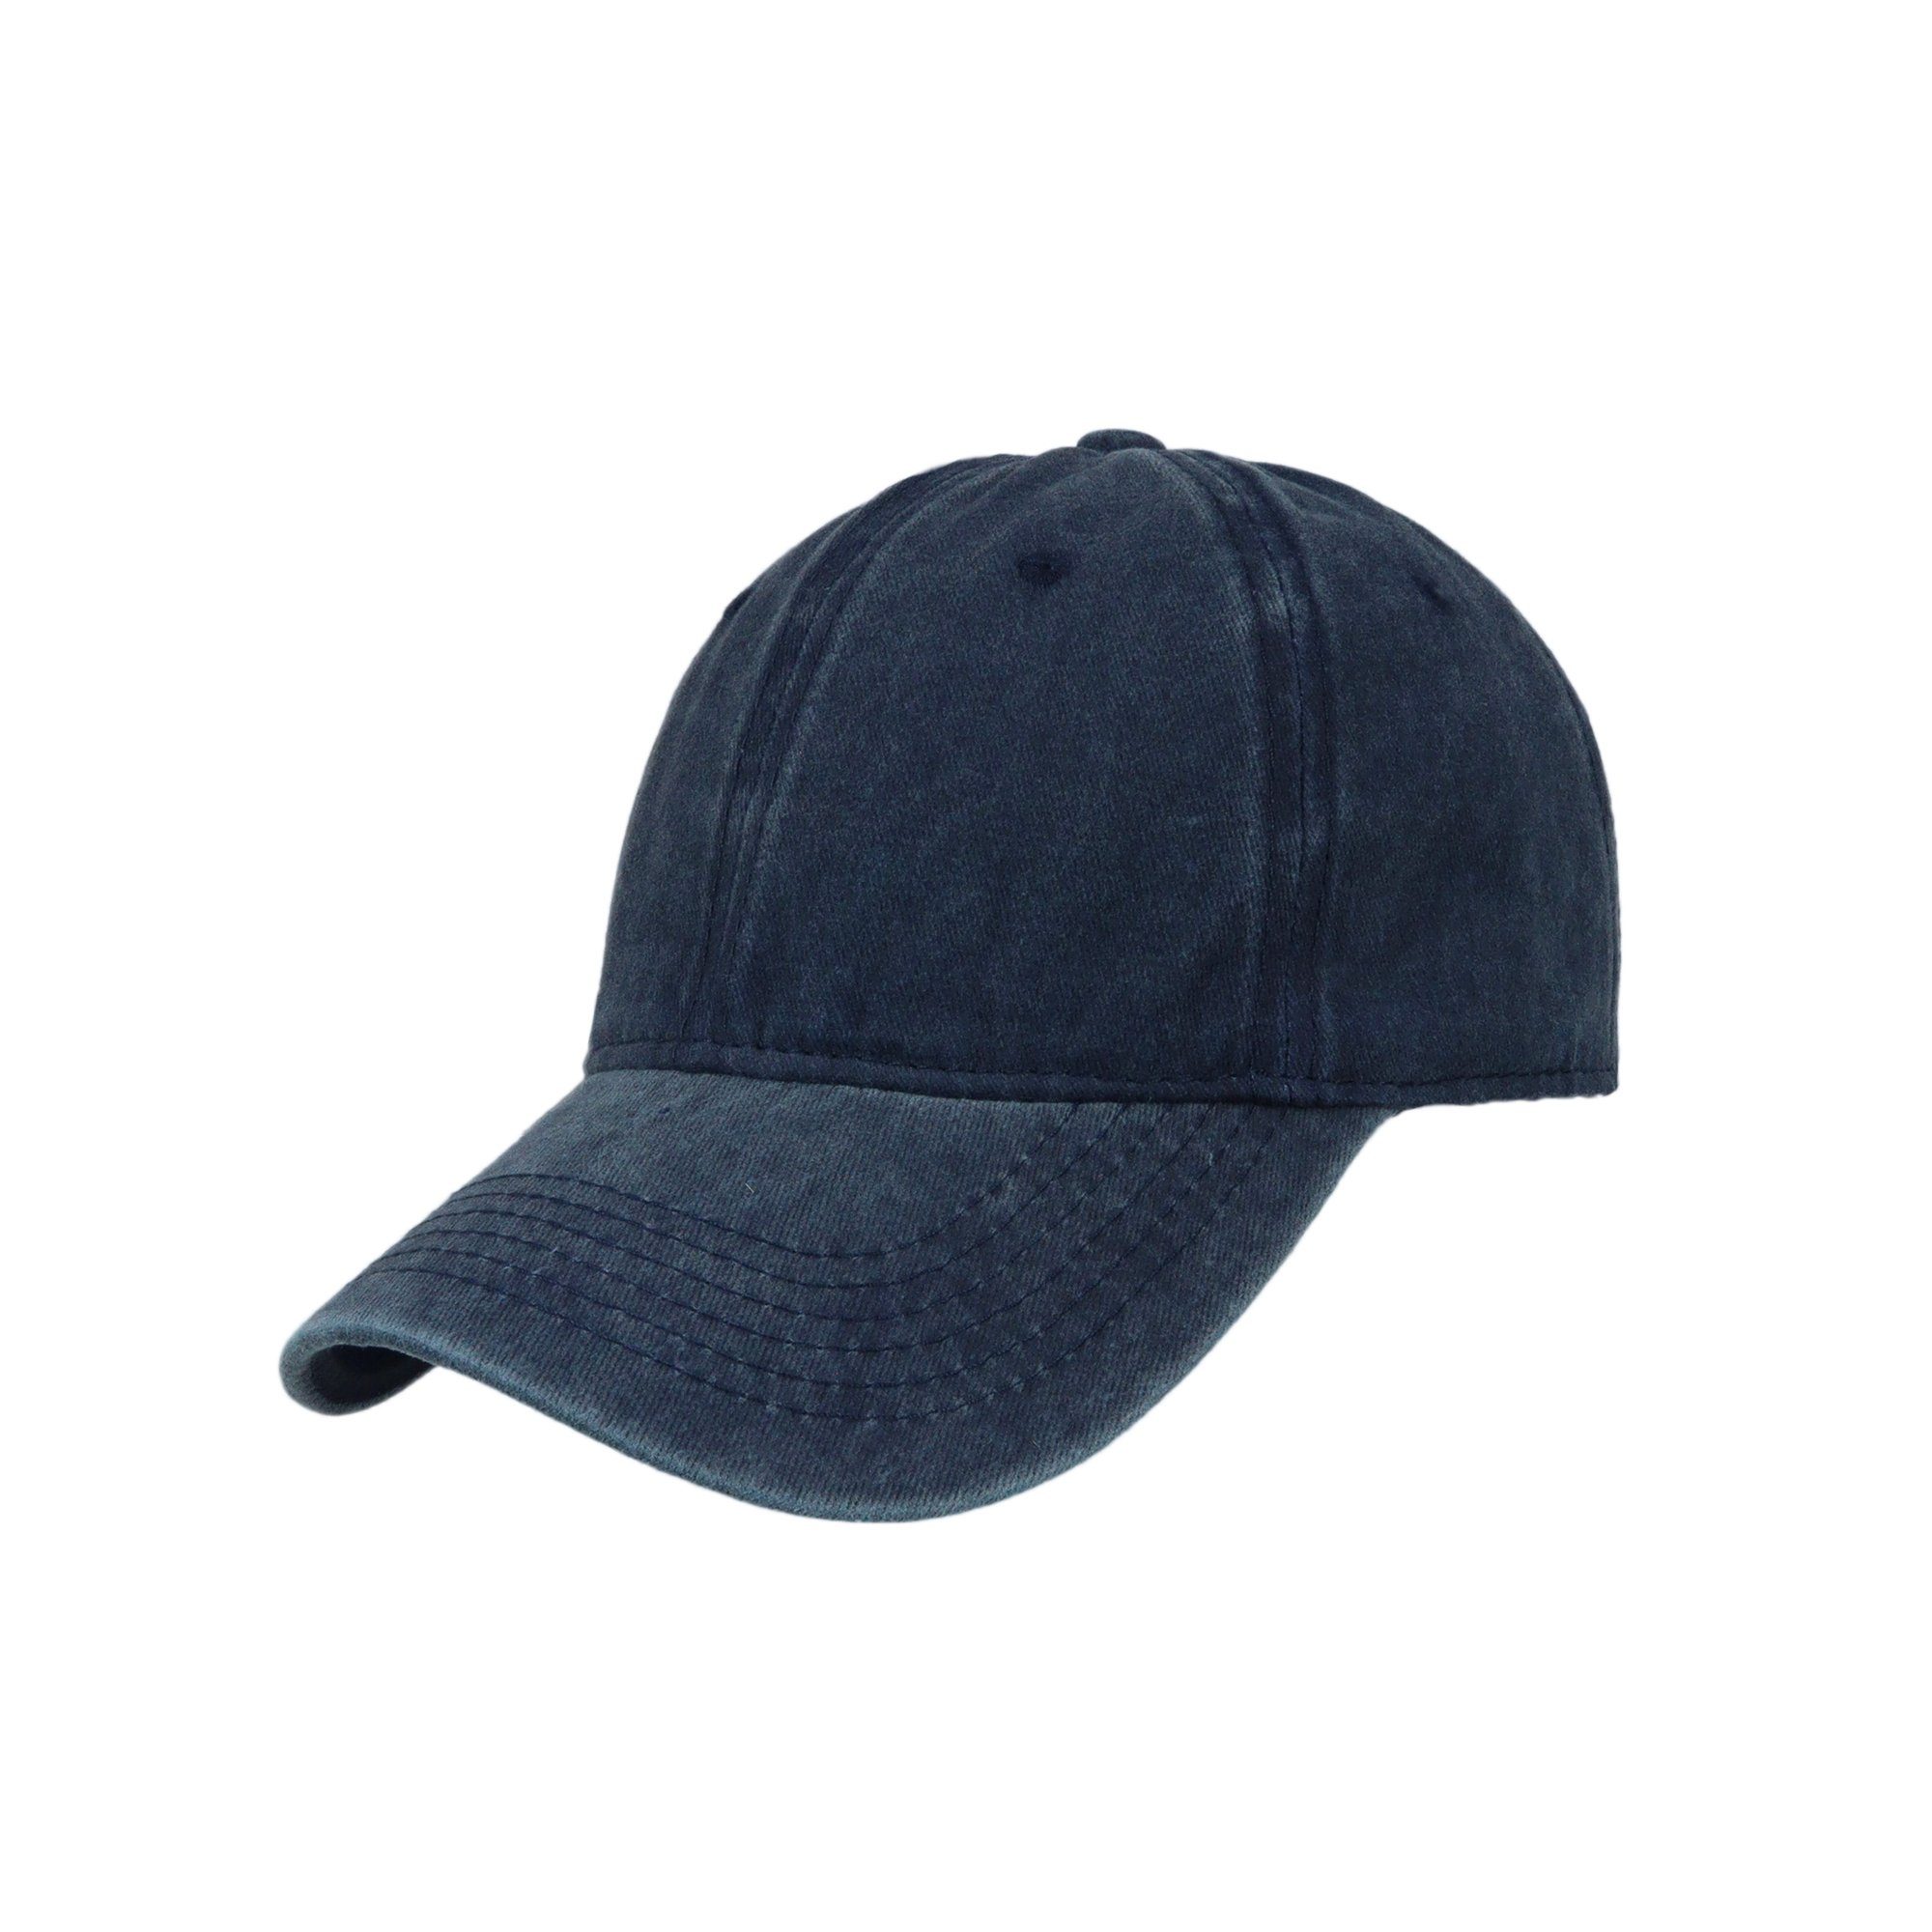 ZEBRO Baseball Cap Base Cap mit Belüftungslöcher königsblau